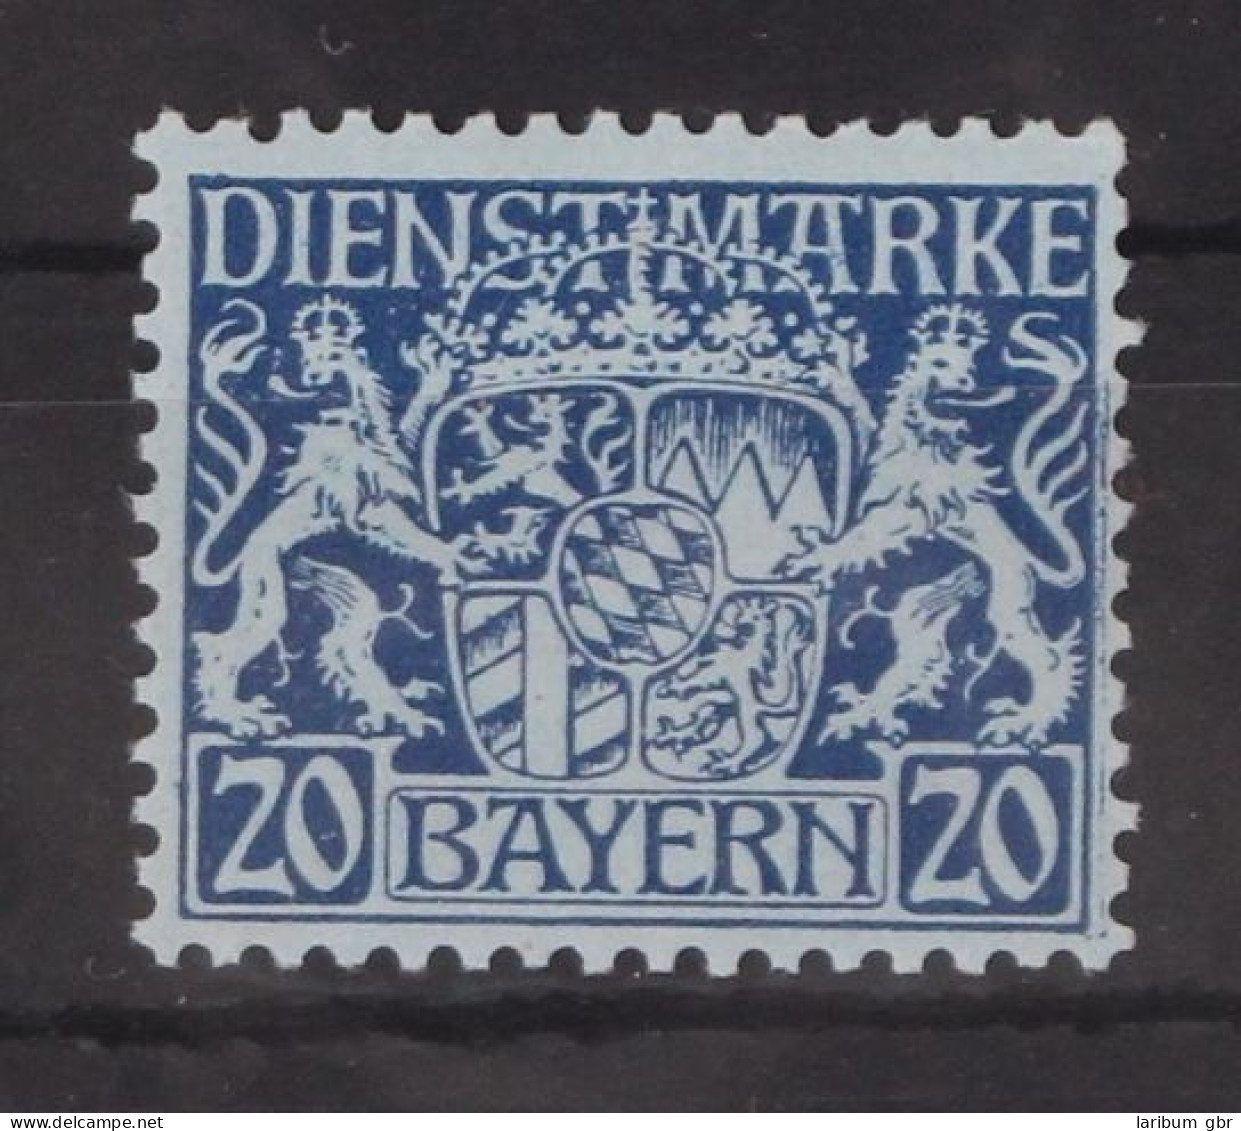 Bayern Dienstmarken 20 Postfrisch #GM097 - Postfris